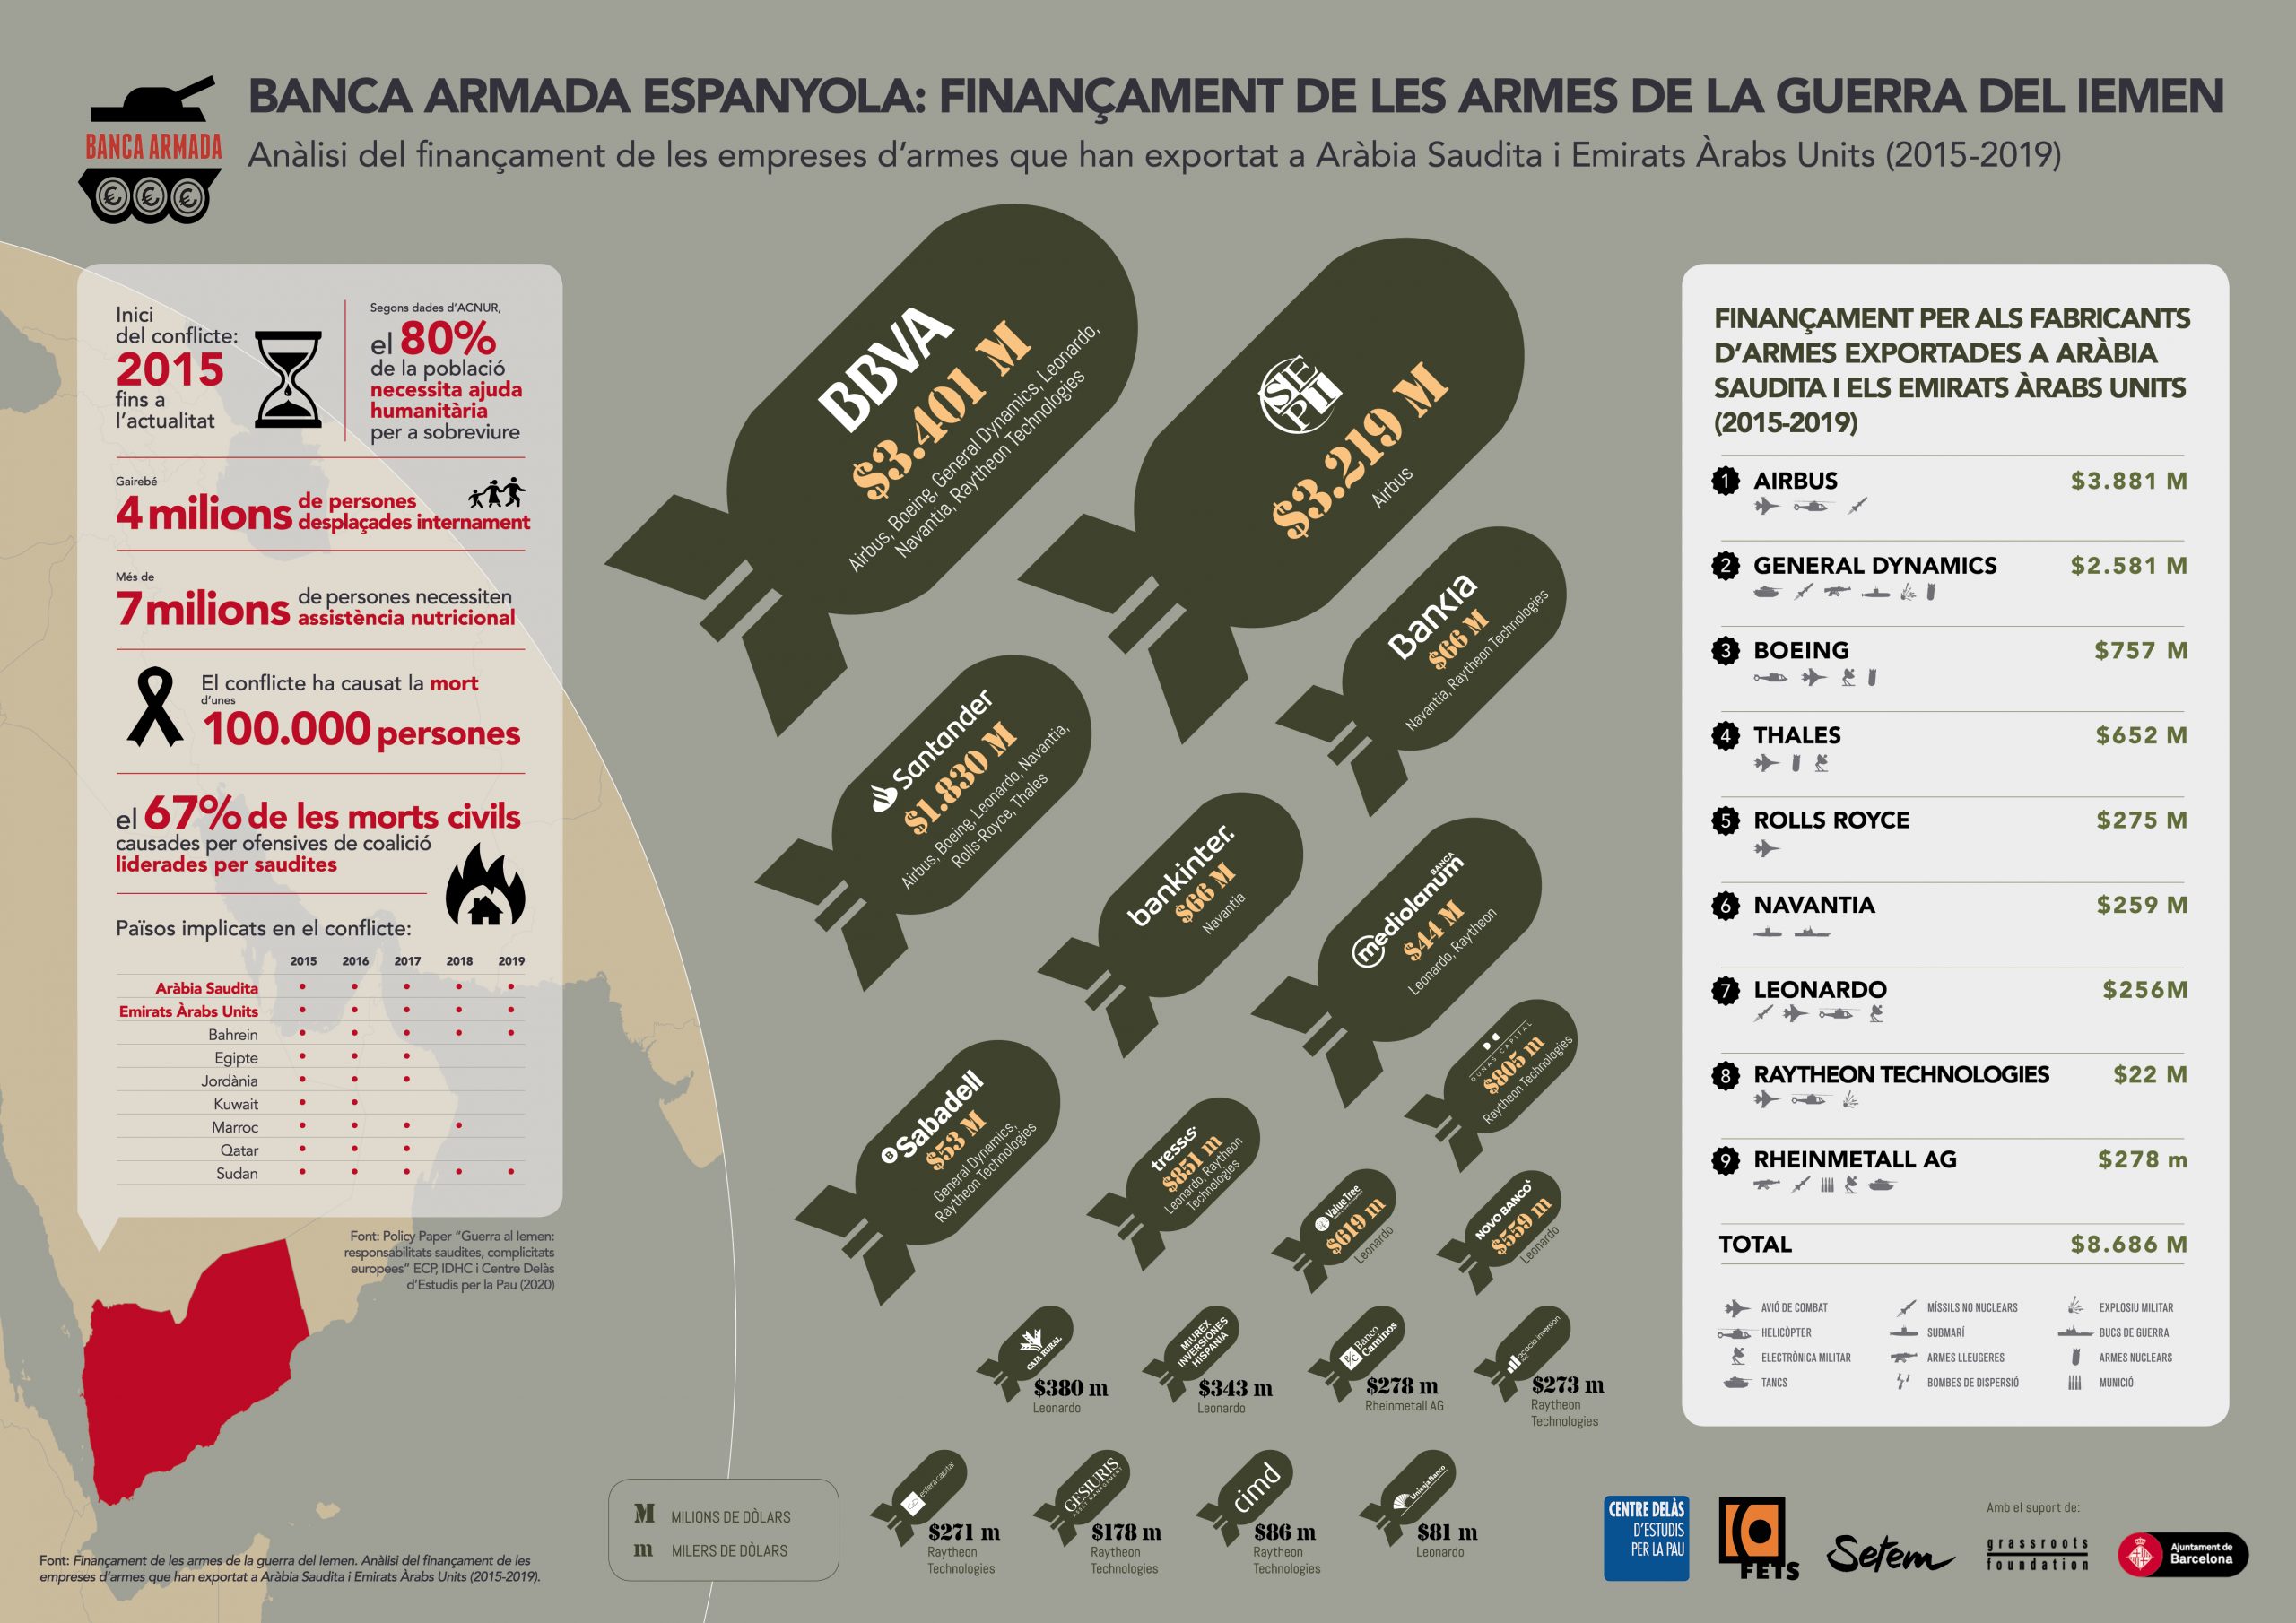 Infografia “Banca Armada espanyola: Finançament de les armes de la guerra del Iemen”